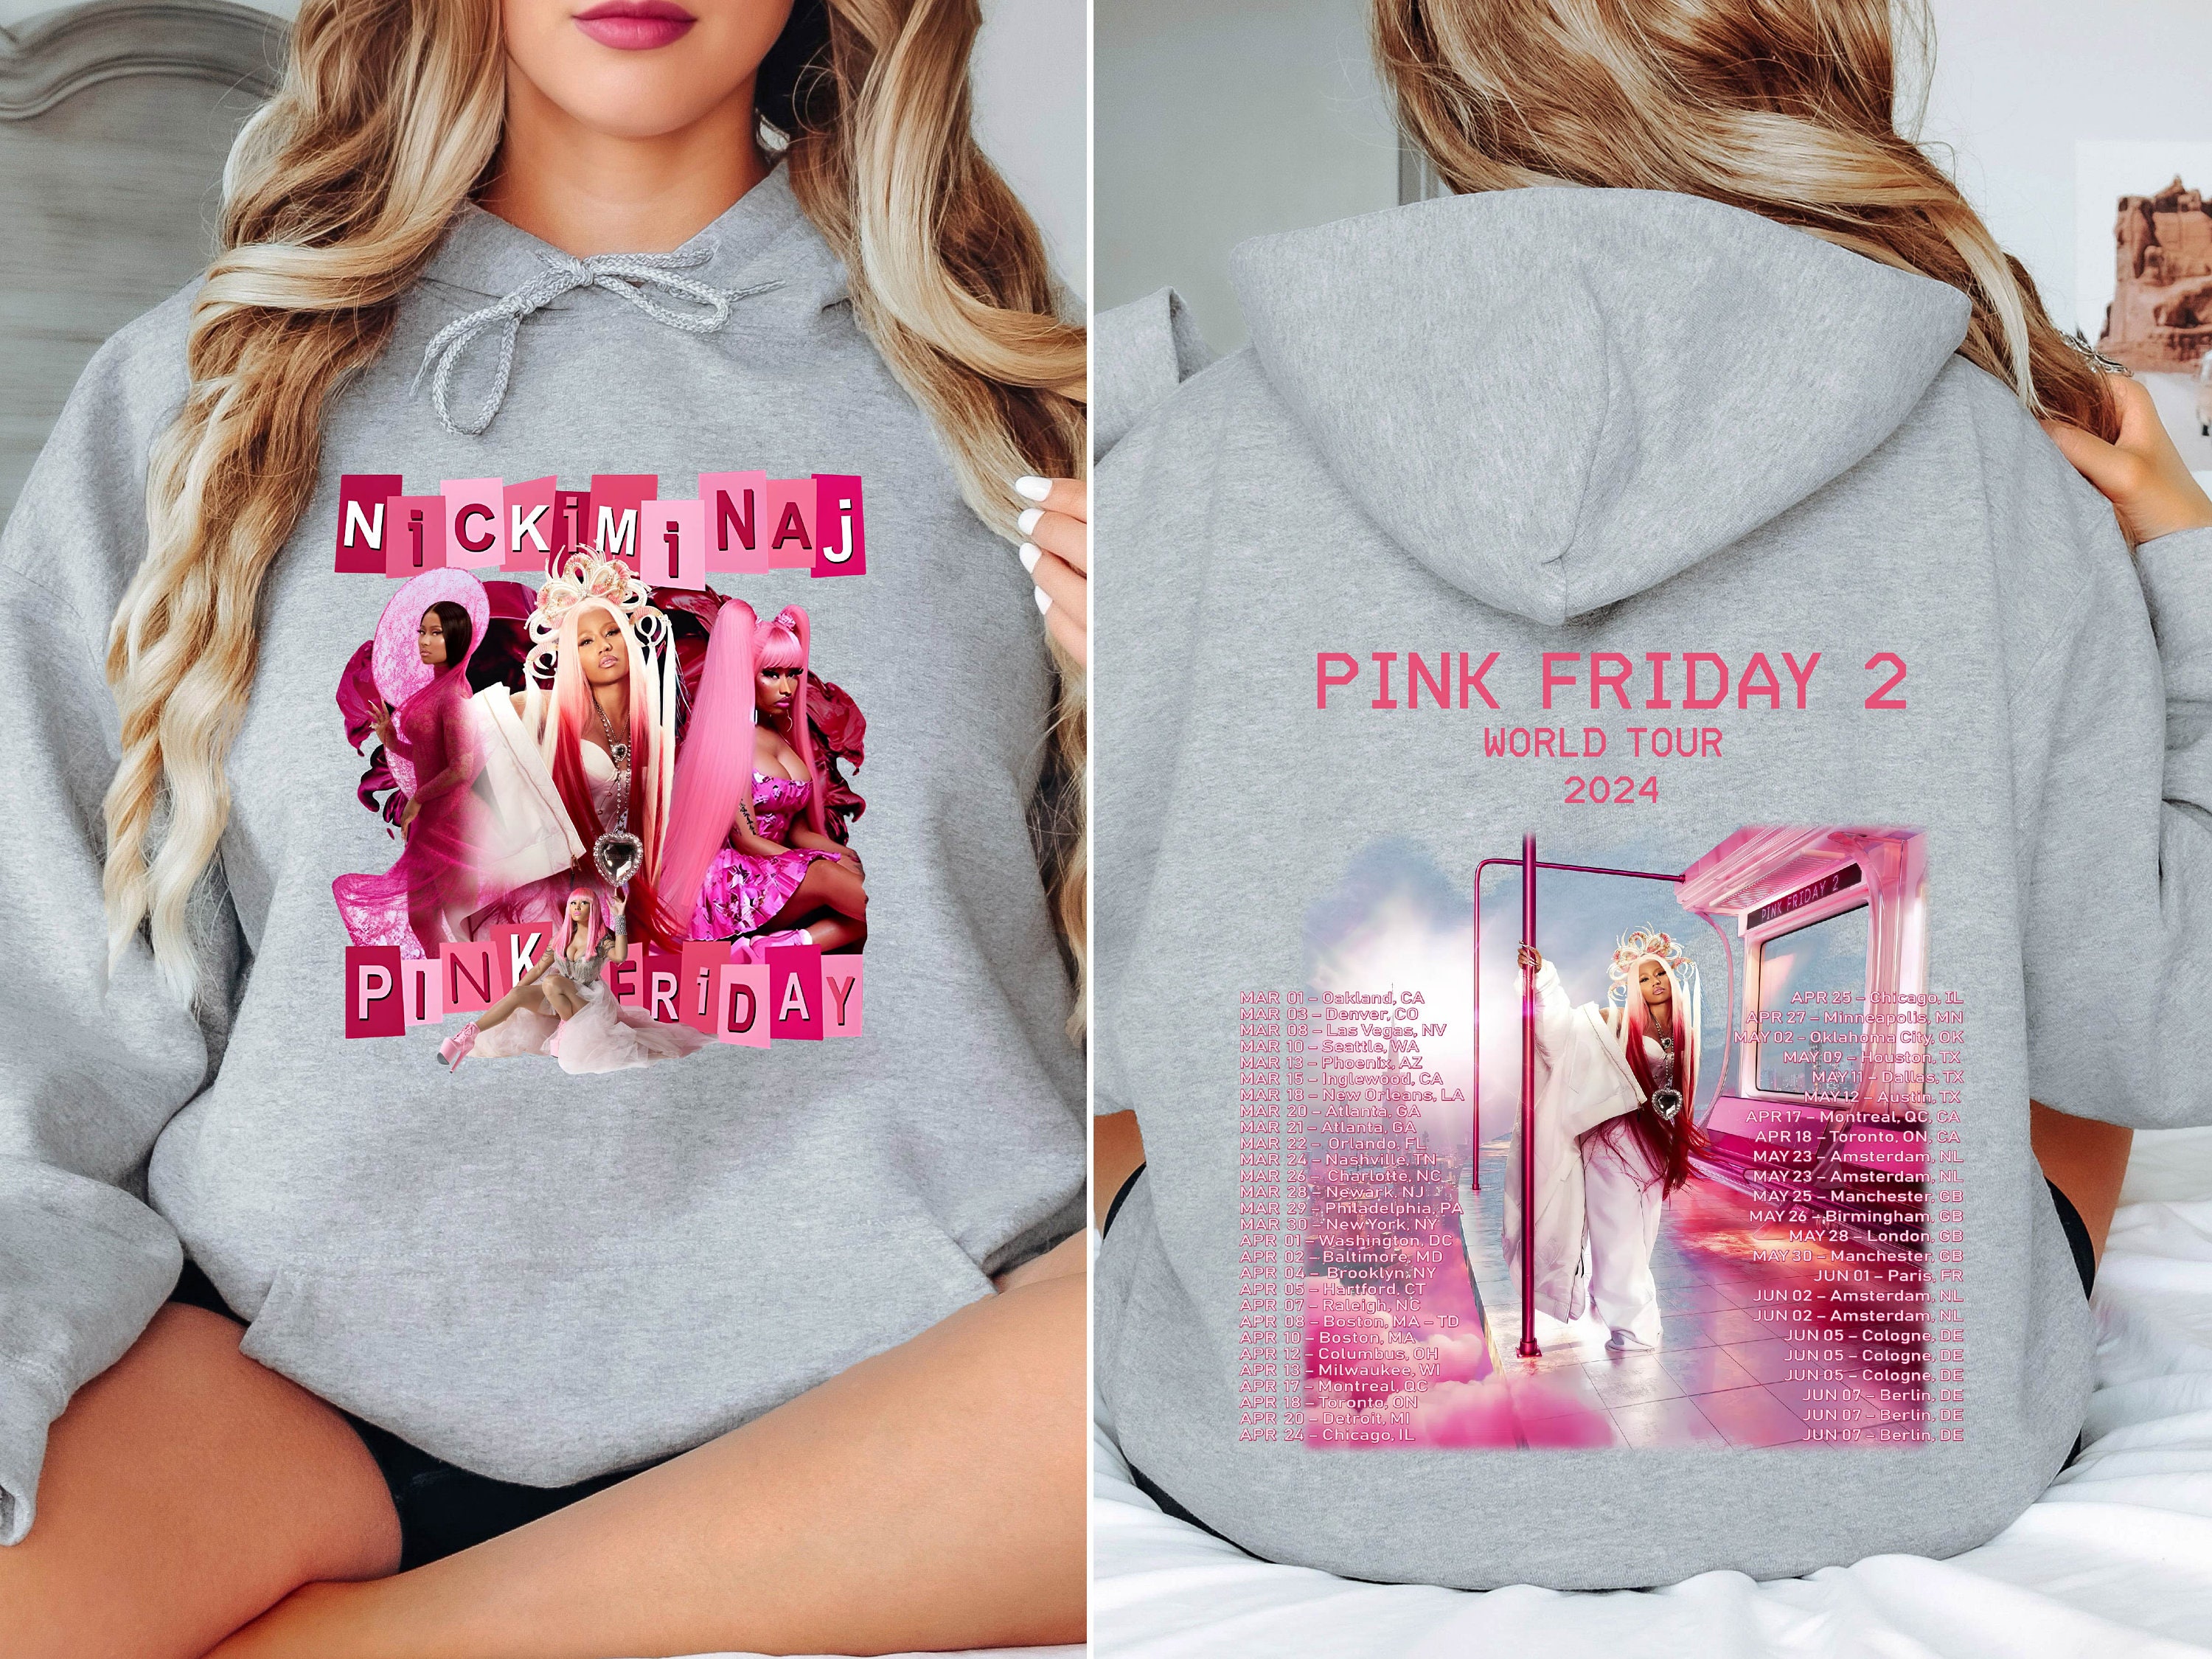 Nicki Minaj Pink Friday 2 World Tour 2024 Shirt, Nicki Minaj Concert Shirt, Gag City Shirt, Retro Nicki Minaj Shirt, Nicki Minaj Fan Gift